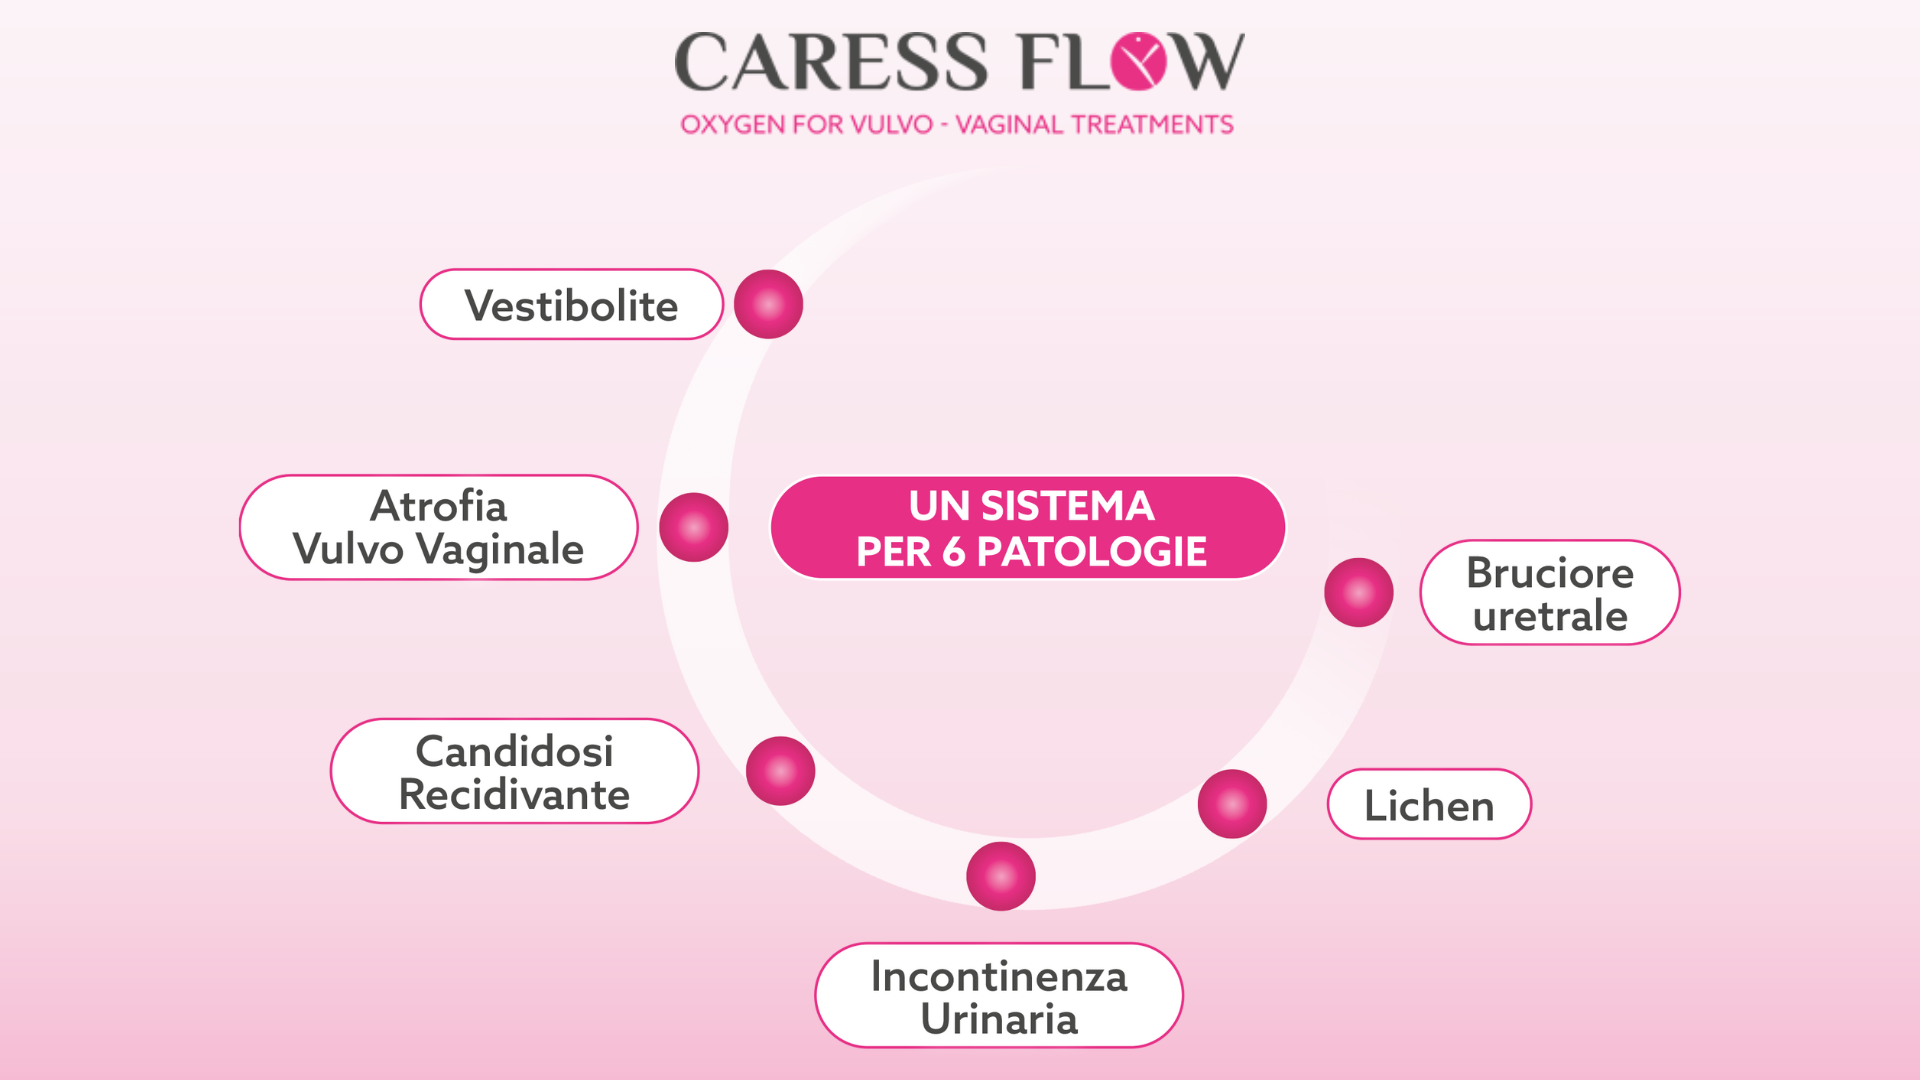 Caressflow Merate